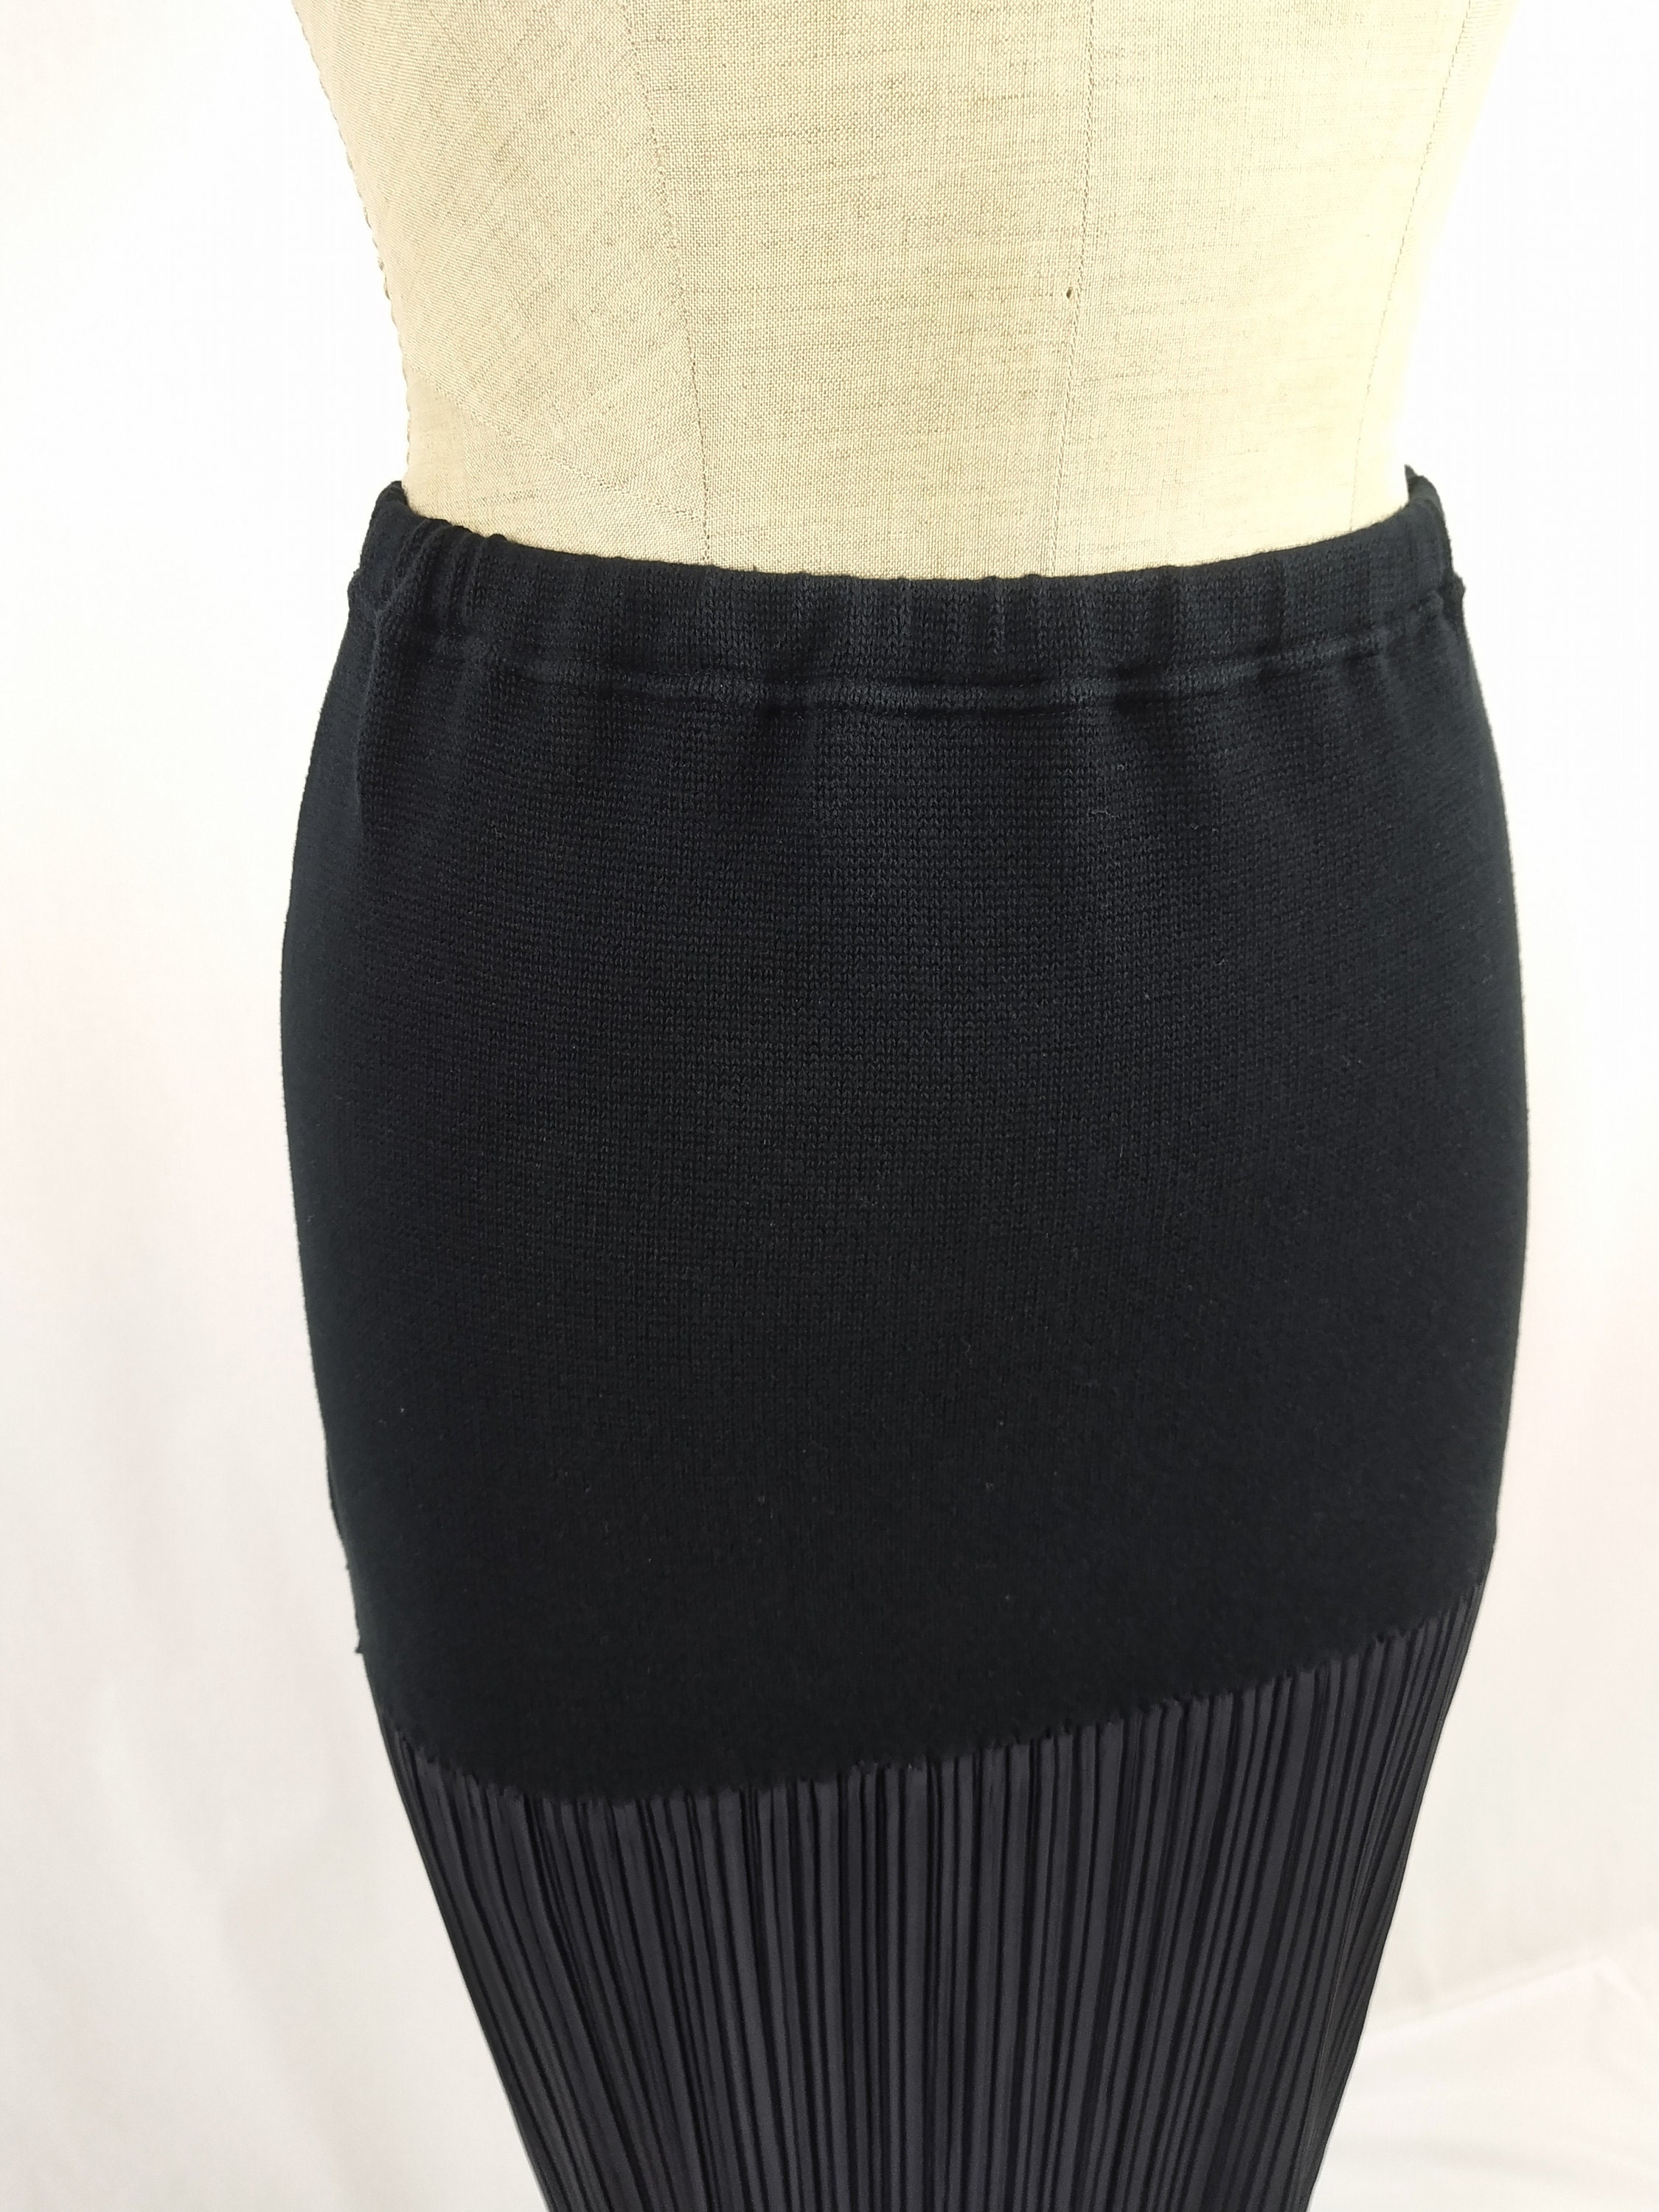 ISSEY MIYAKE vintage 90s long black pleated skirt